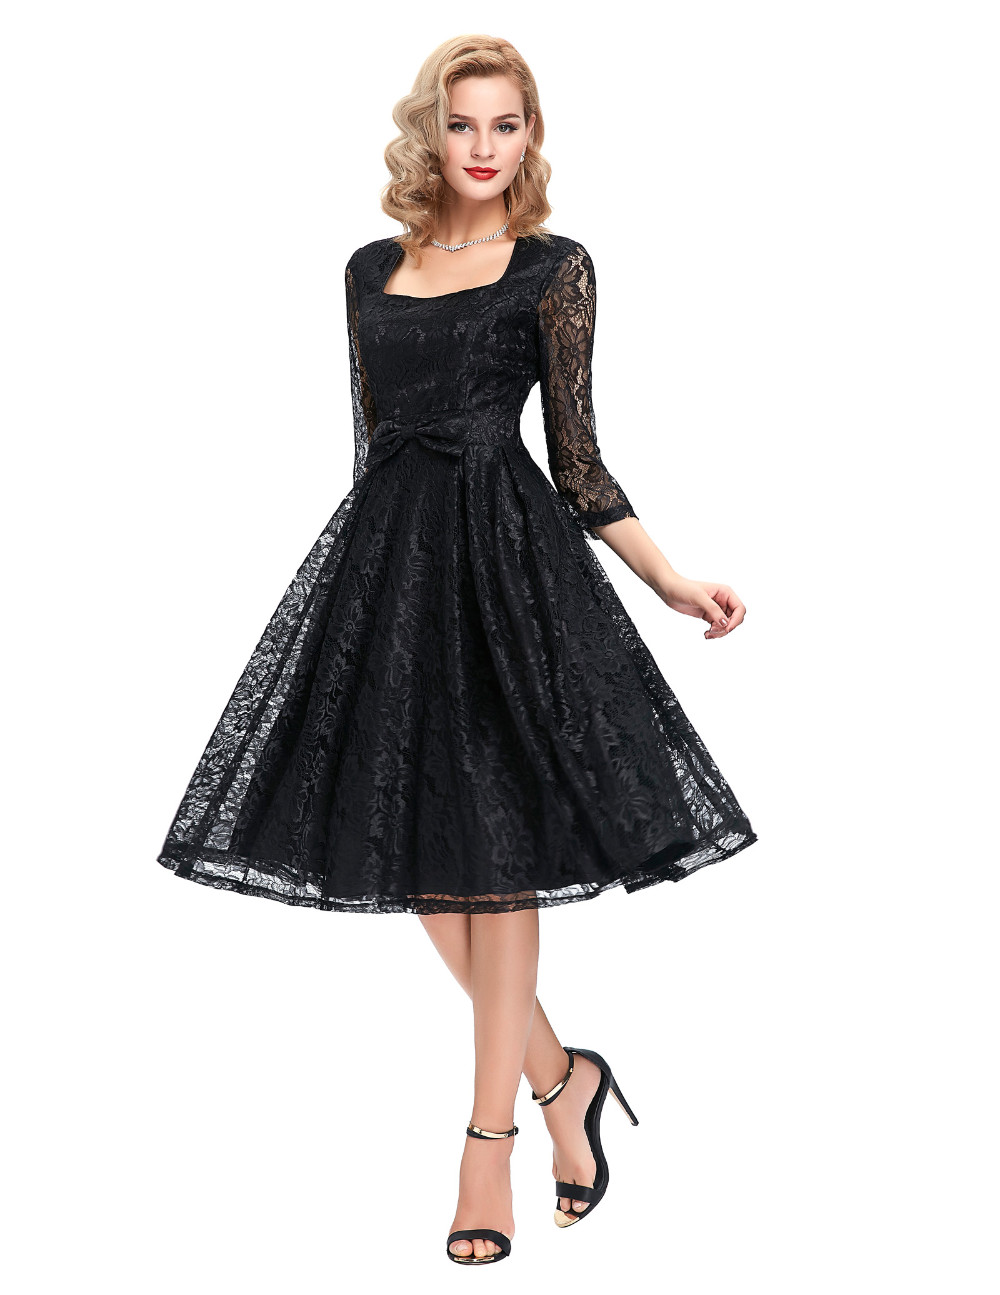 Autumn-34-sleeve-Black-Lace-women-dresses-2017-Retro-Vintage-Lace-Picnic-Beach-Dress-A-line-midi-Ves-32612734646